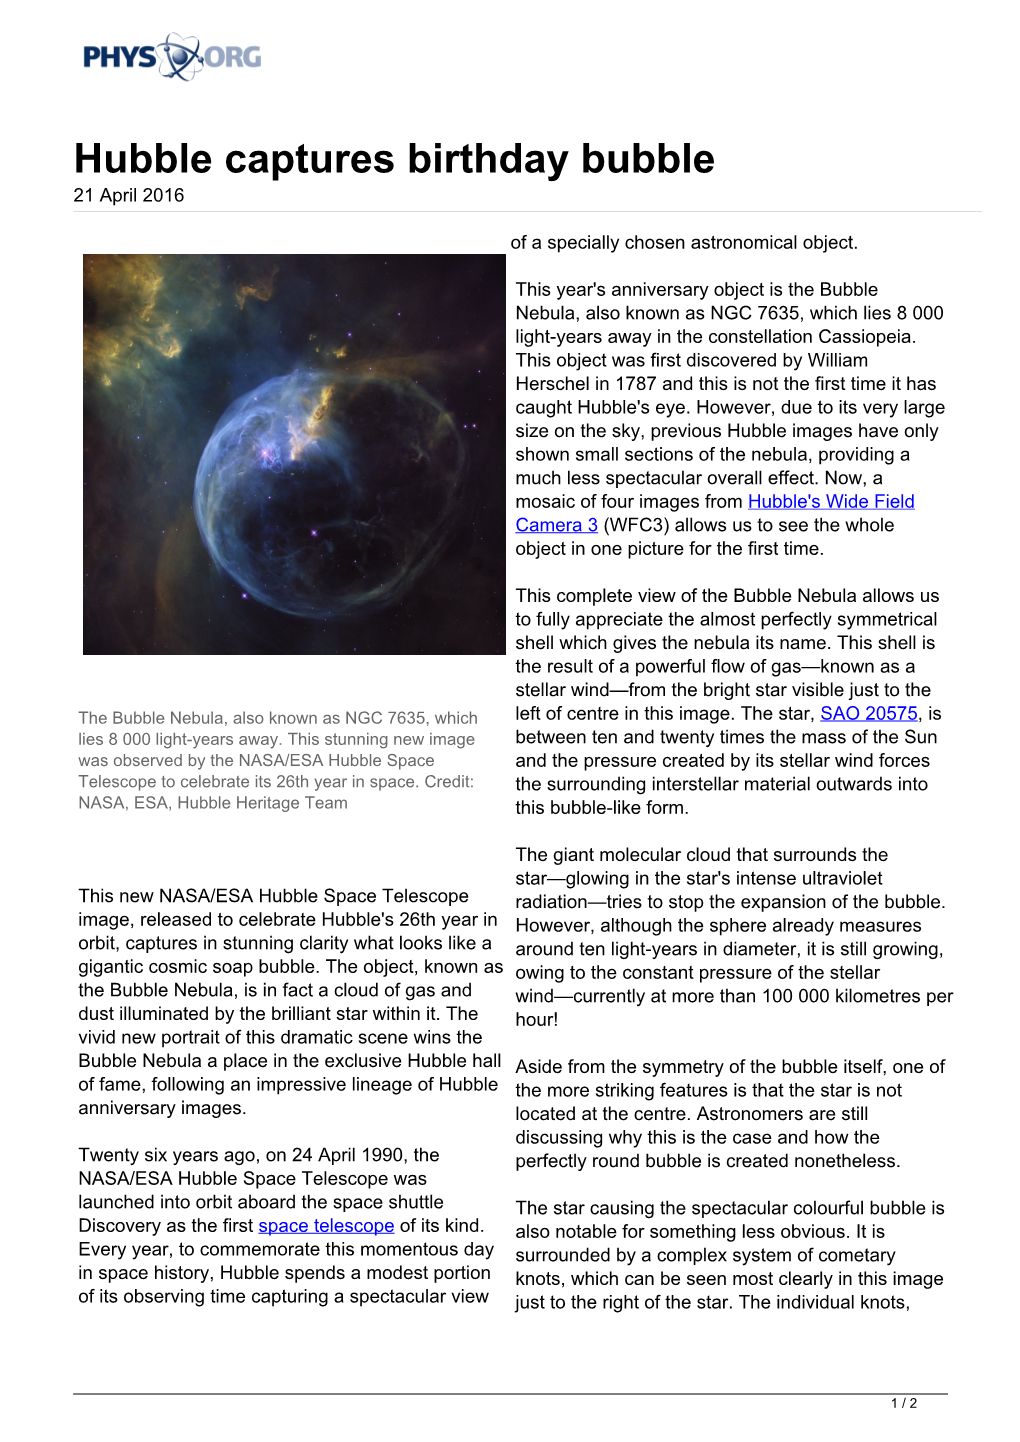 Hubble Captures Birthday Bubble 21 April 2016